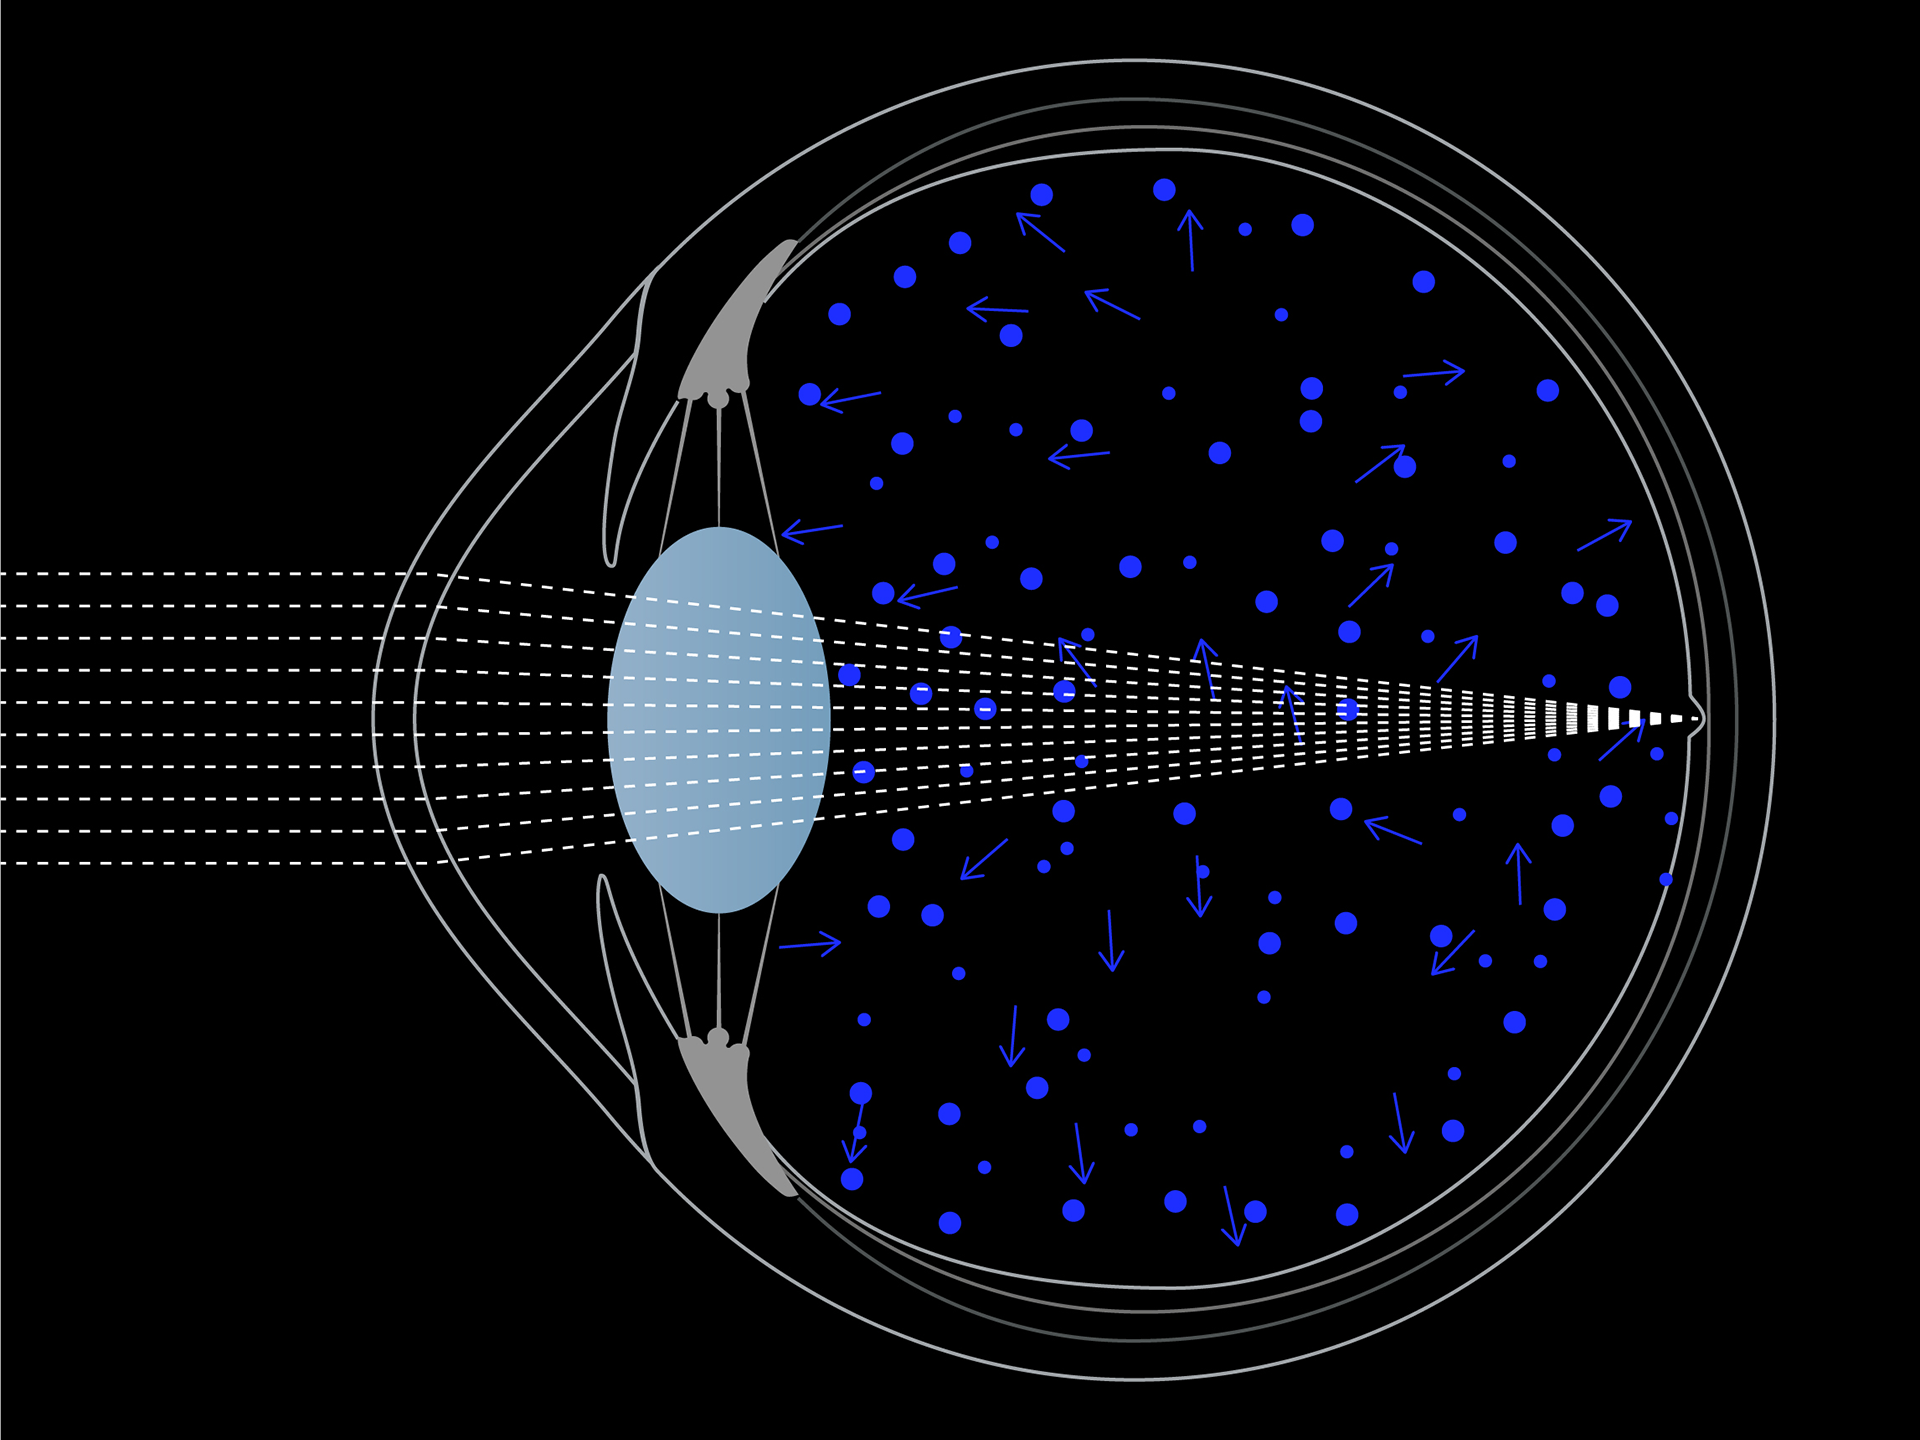 Skematisk visualisering af blålysspredning i øjet.